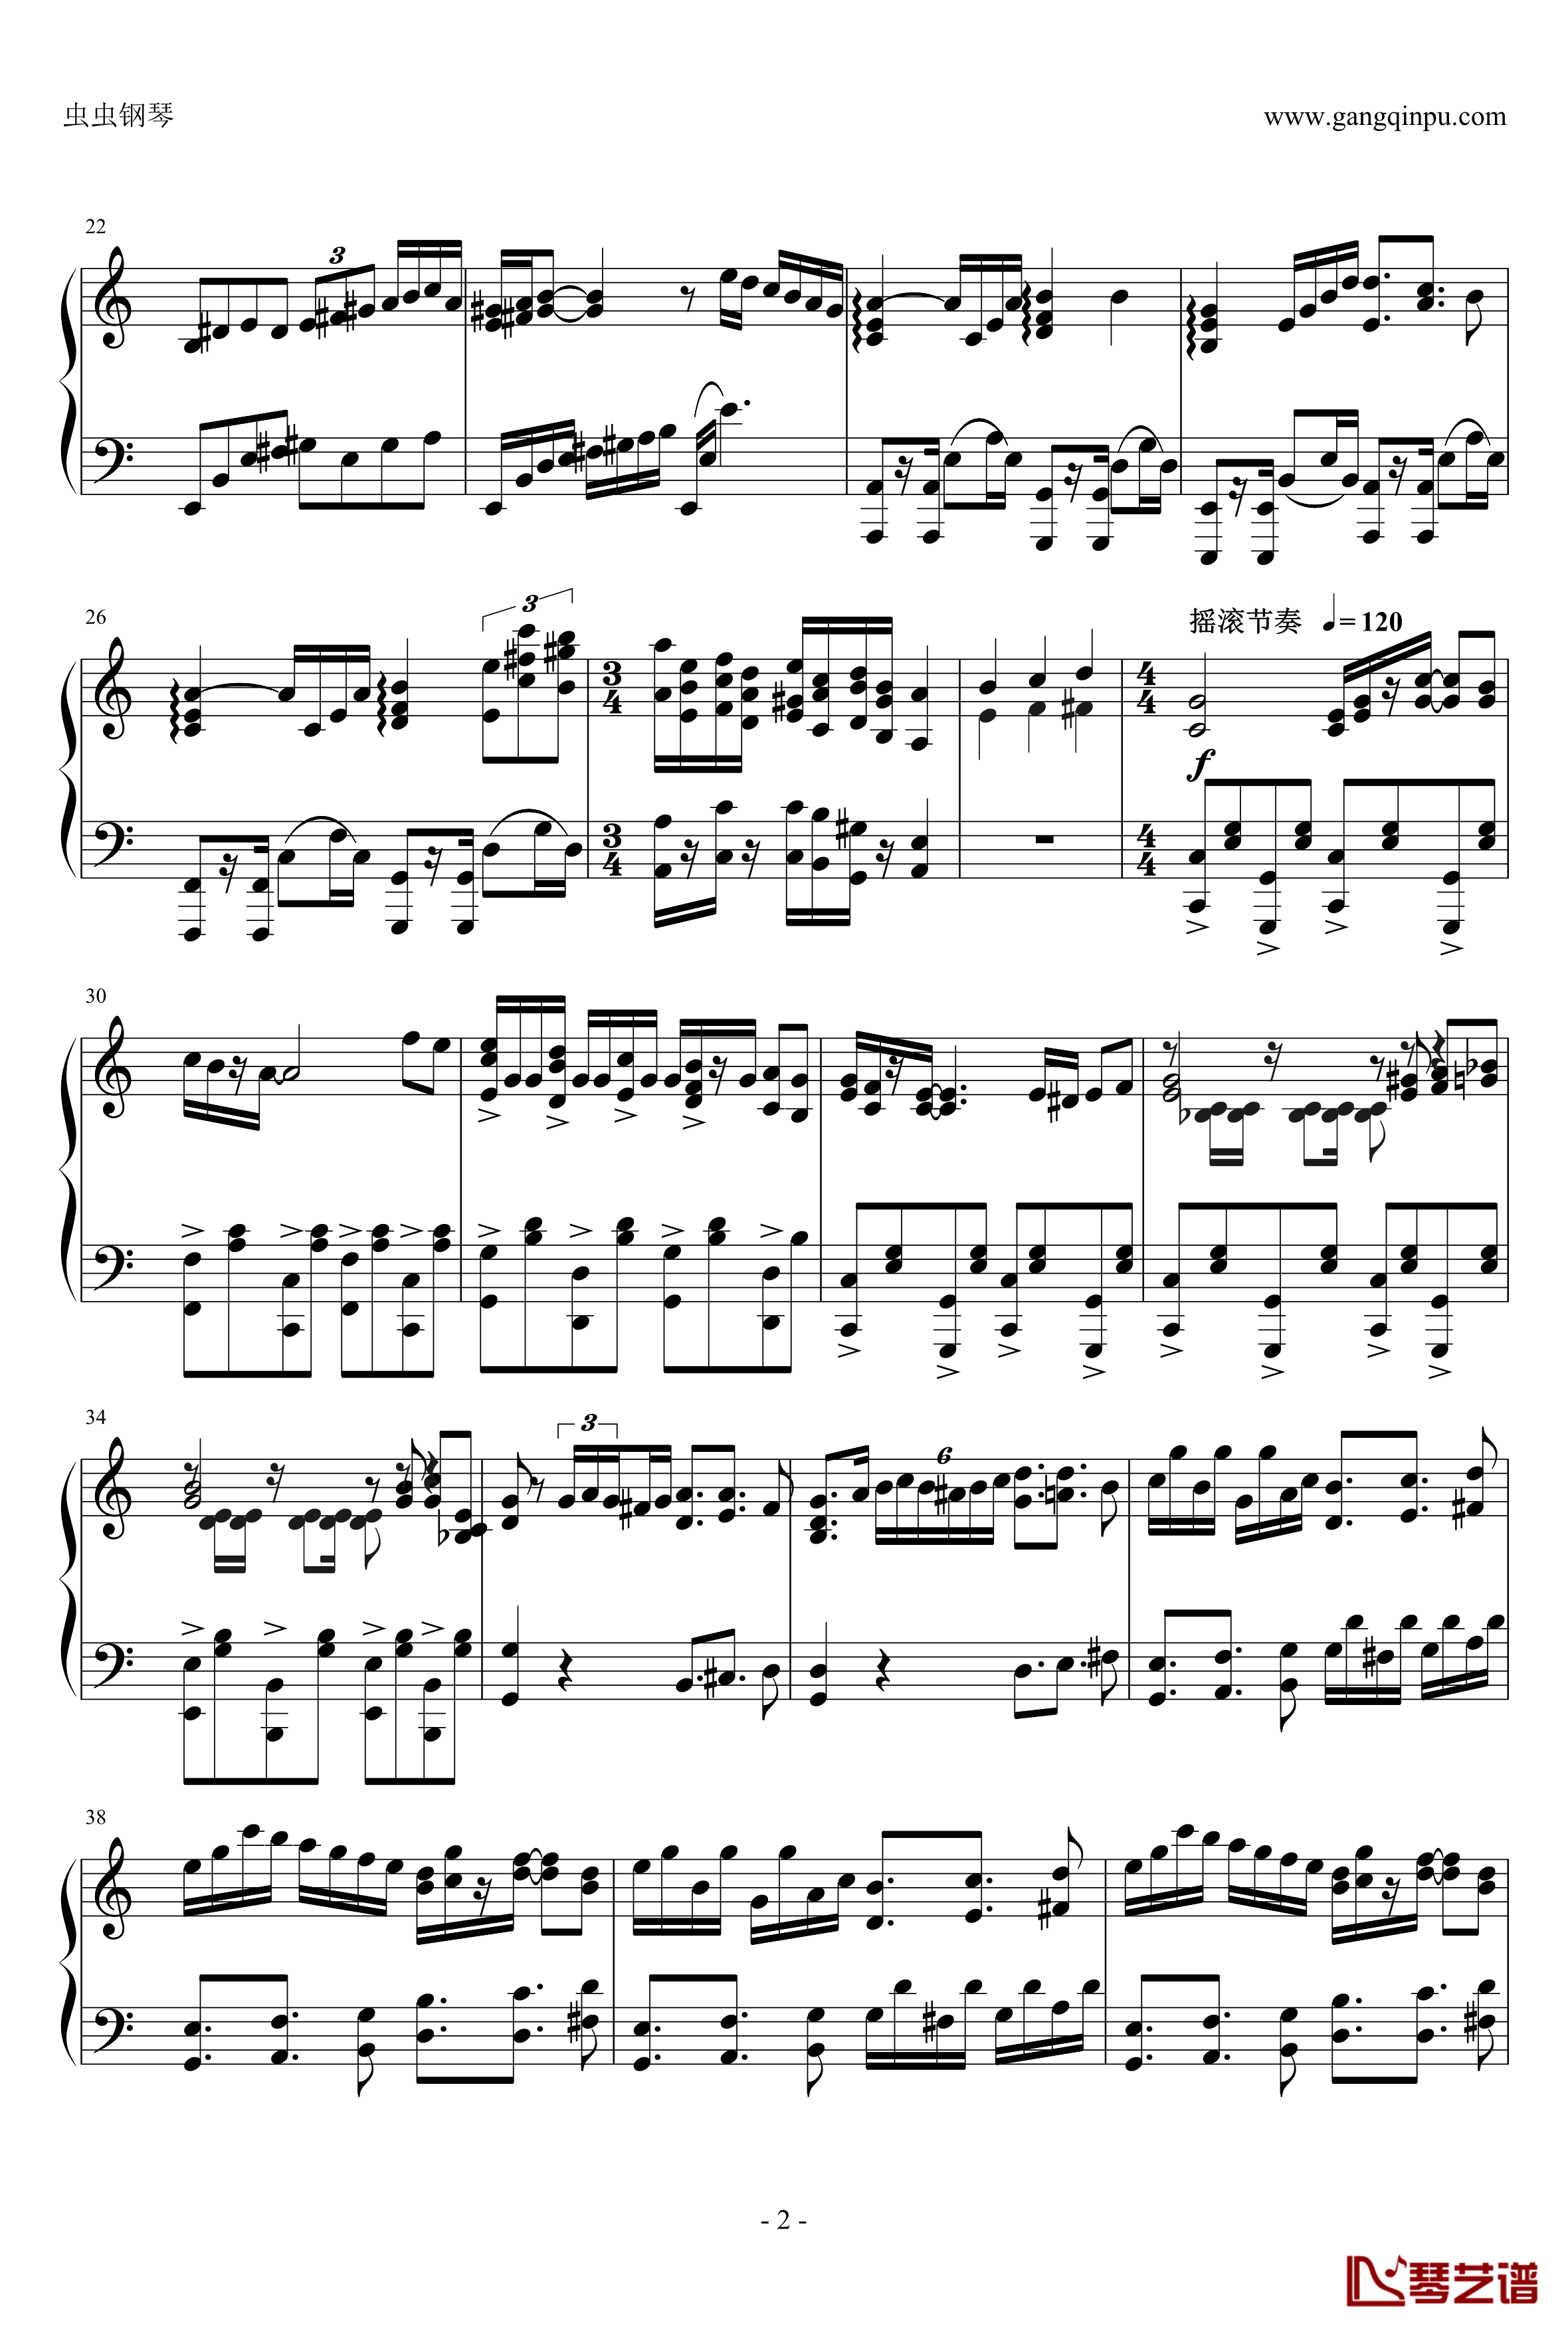 爱丽丝主题狂想曲钢琴谱-绝对的听觉冲击-贝多芬-beethoven2